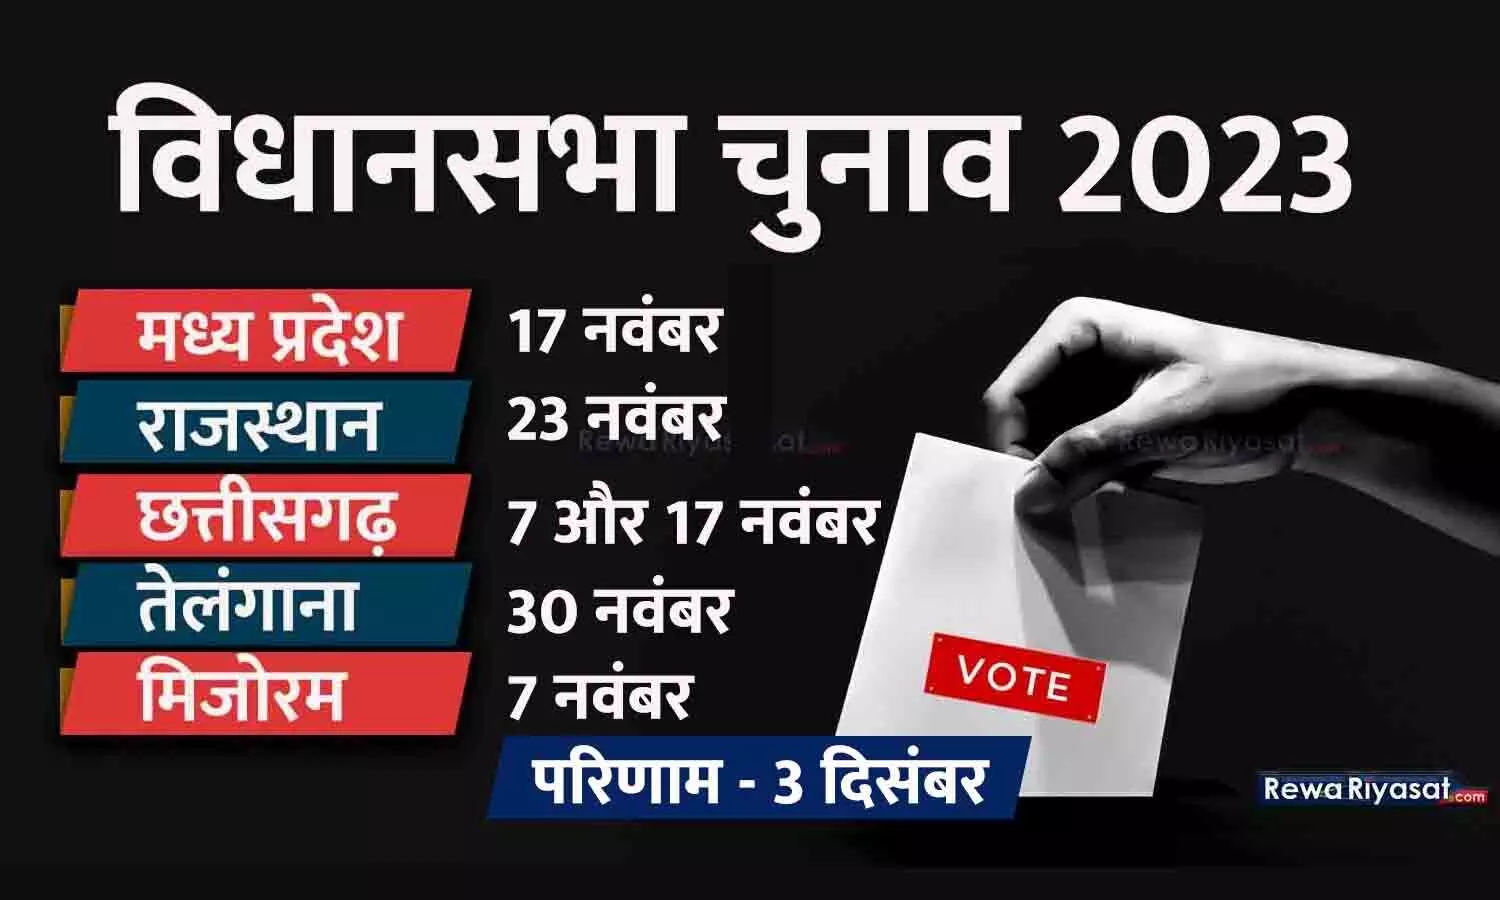 ECI PC LIVE: MP-राजस्थान समेत 5 राज्यों में विधानसभा चुनाव की तारीखें घोषित, 3 दिसंबर को परिणाम; आदर्श आचार संहिता लागू